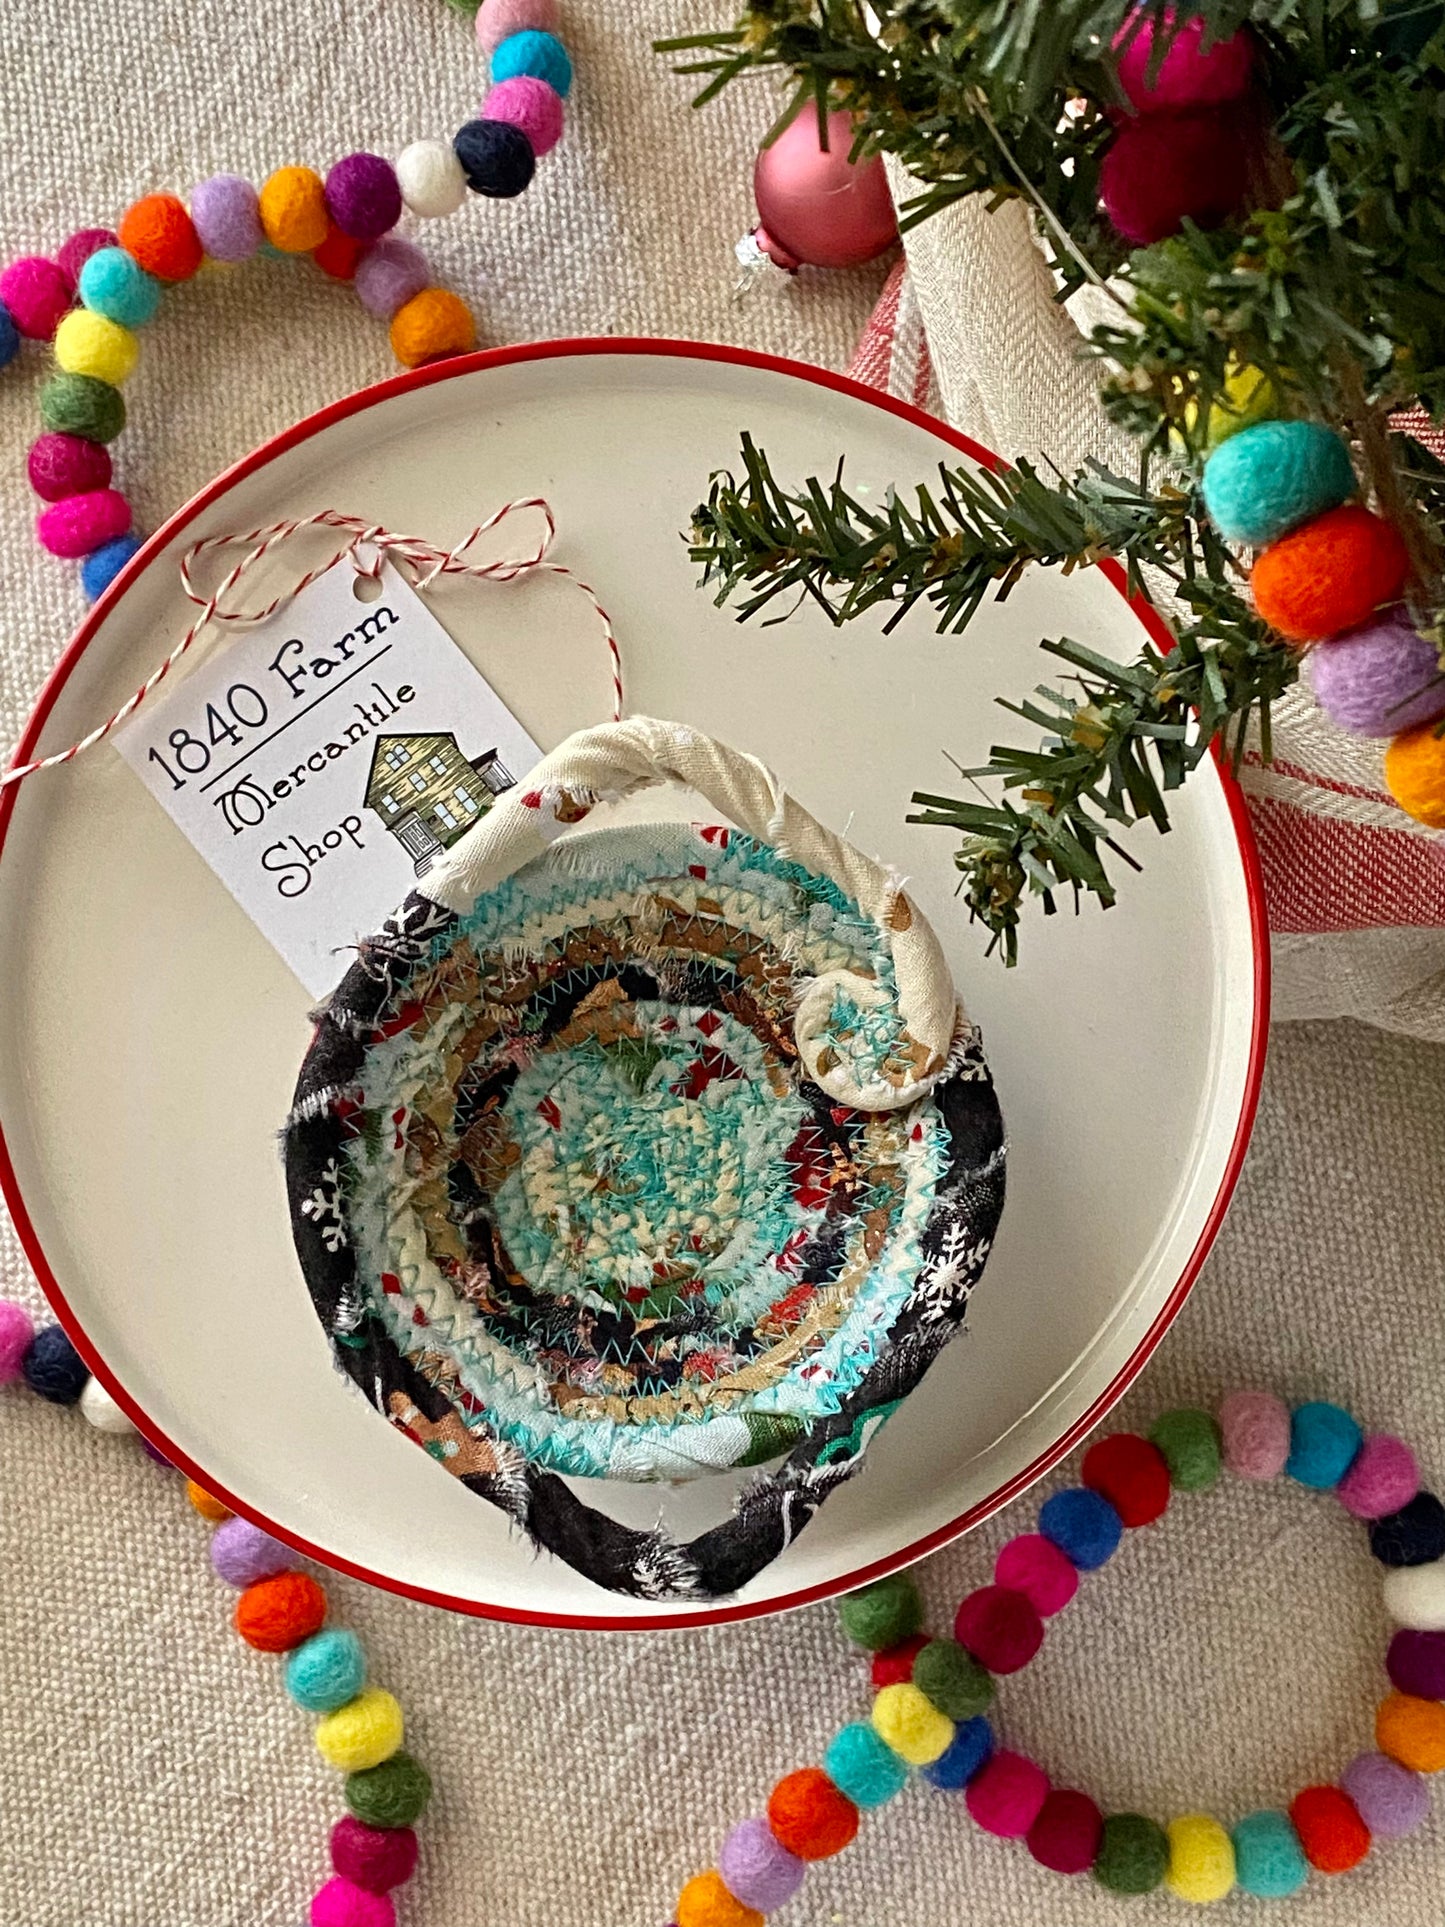 Miniature Egg Basket Ornament/Decoration